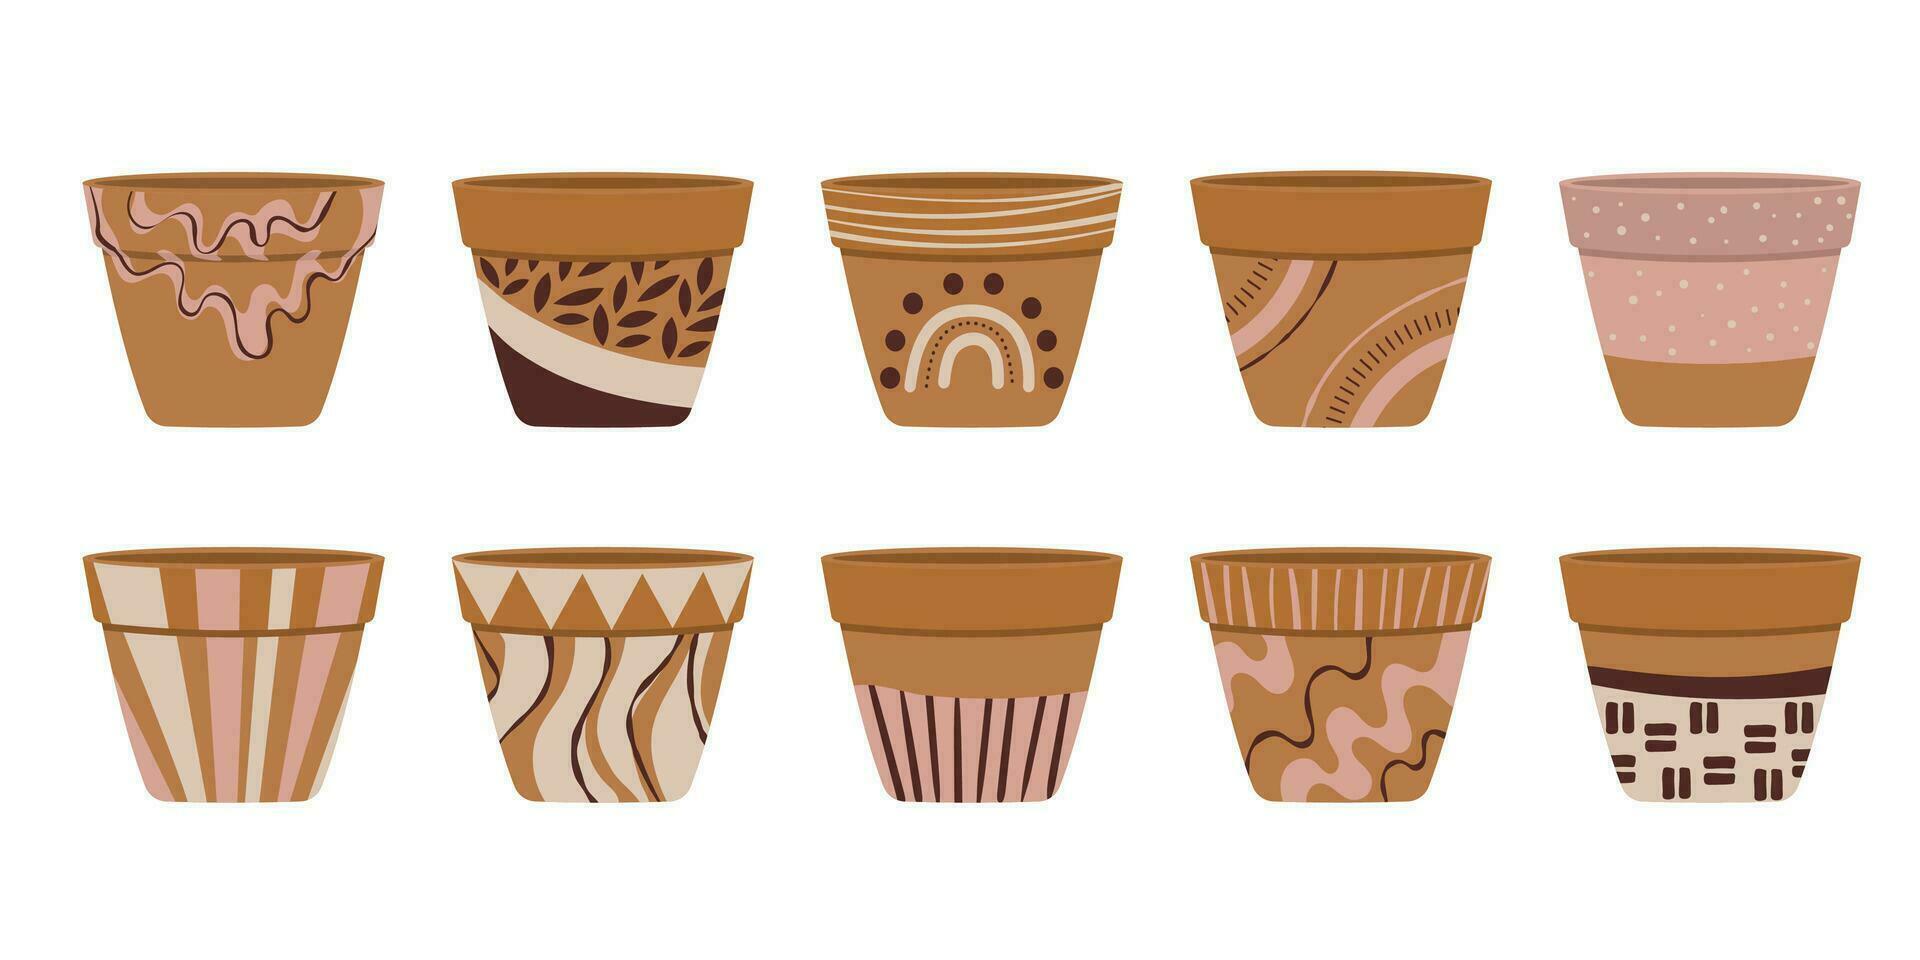 samling av tömma terrakotta blomma kastruller för Hem plantering. keramisk pott dekorerad med handmålad memphis stil. vektor